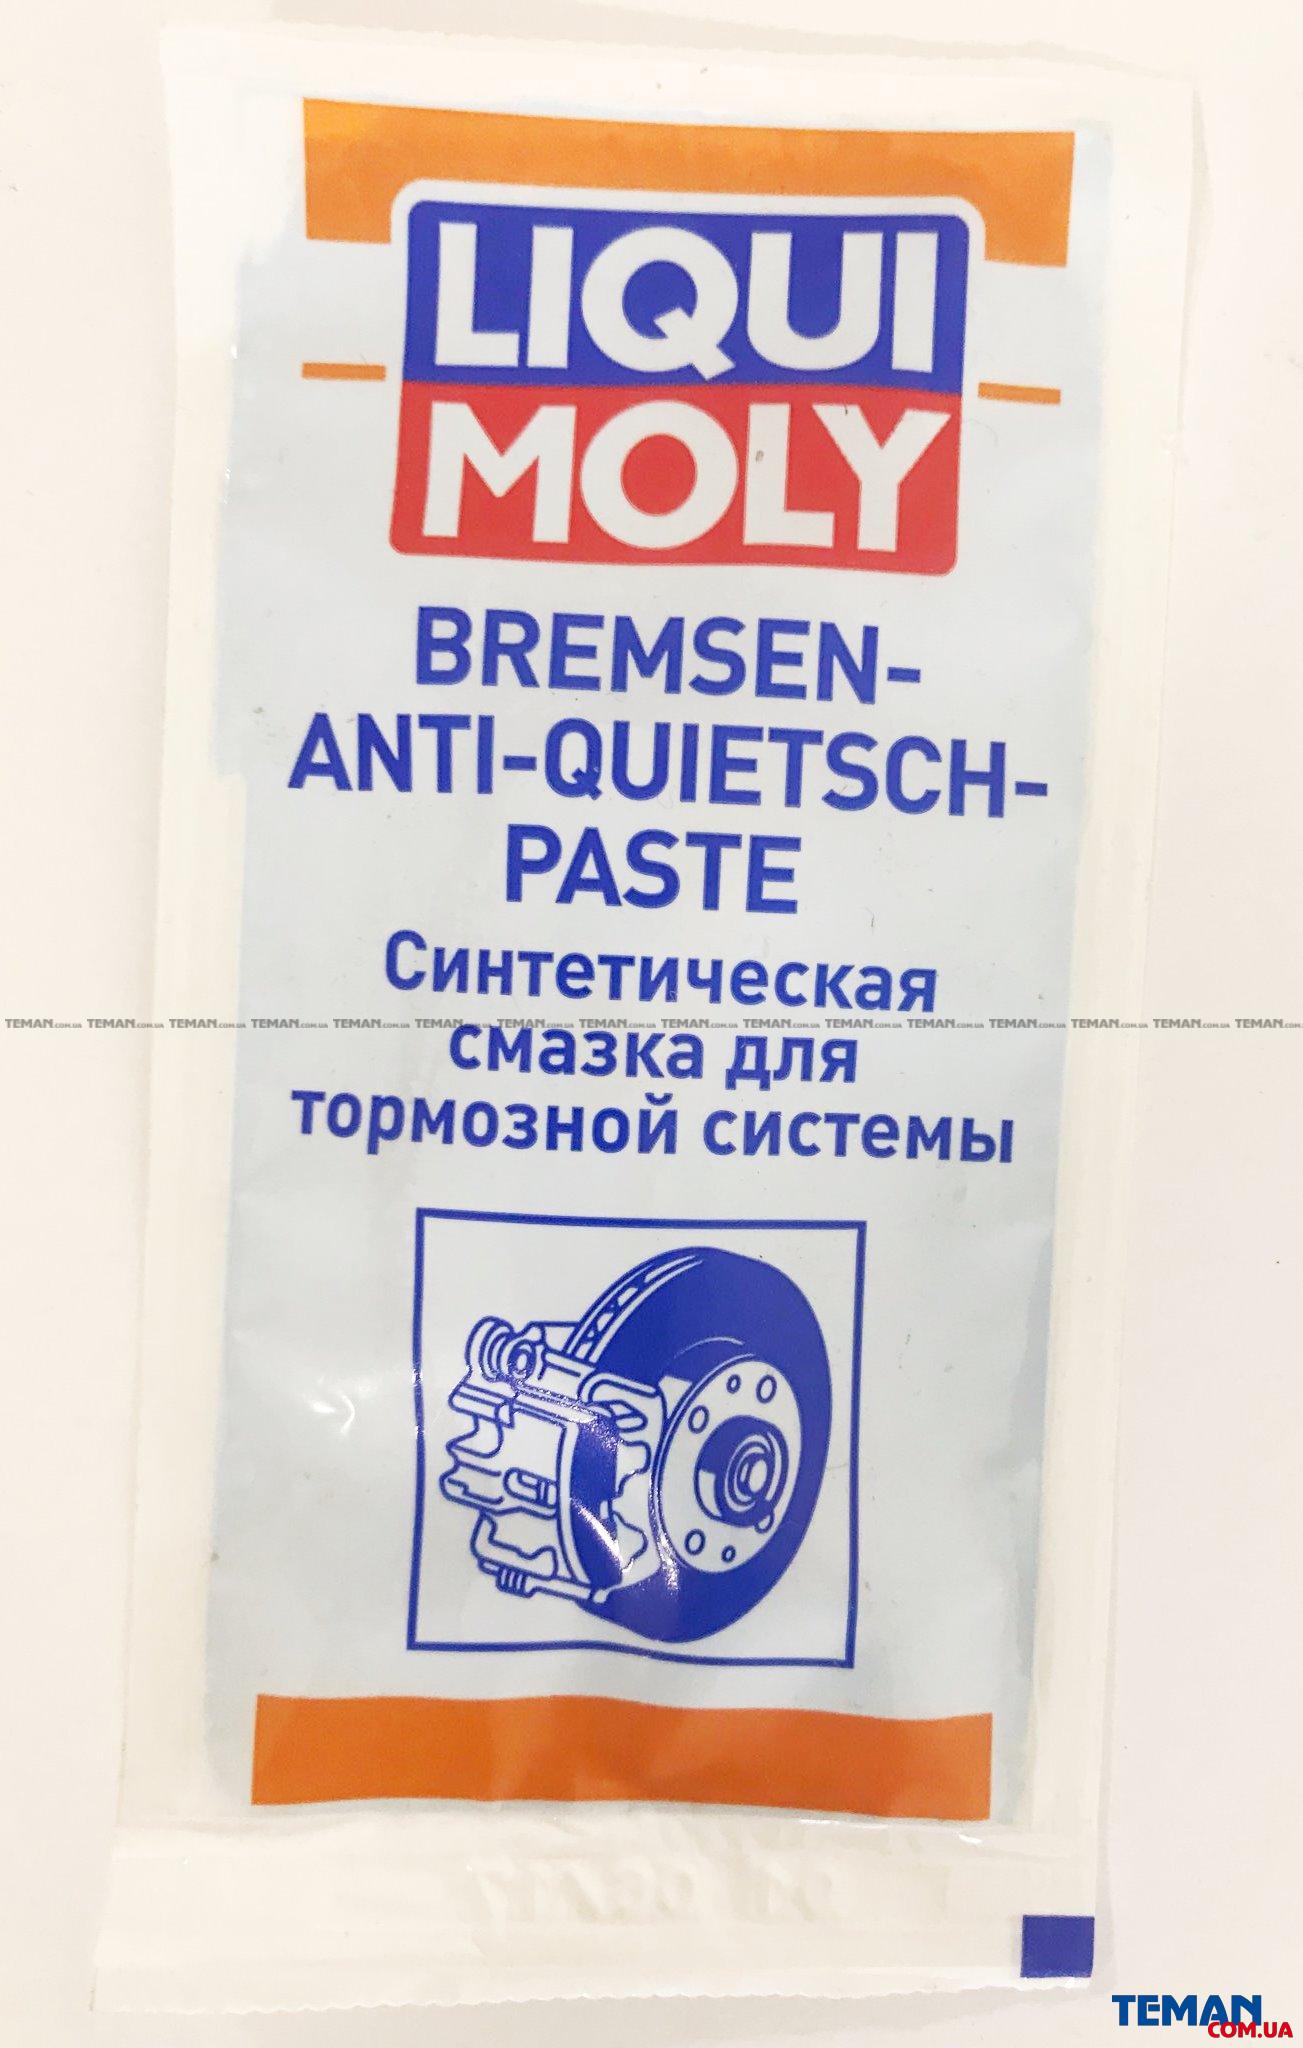  Купить Синтетическая смазка для тормозной системы Bremsen-Anti-Quietsch-Paste, 10 млLIQUI MOLY 7585   